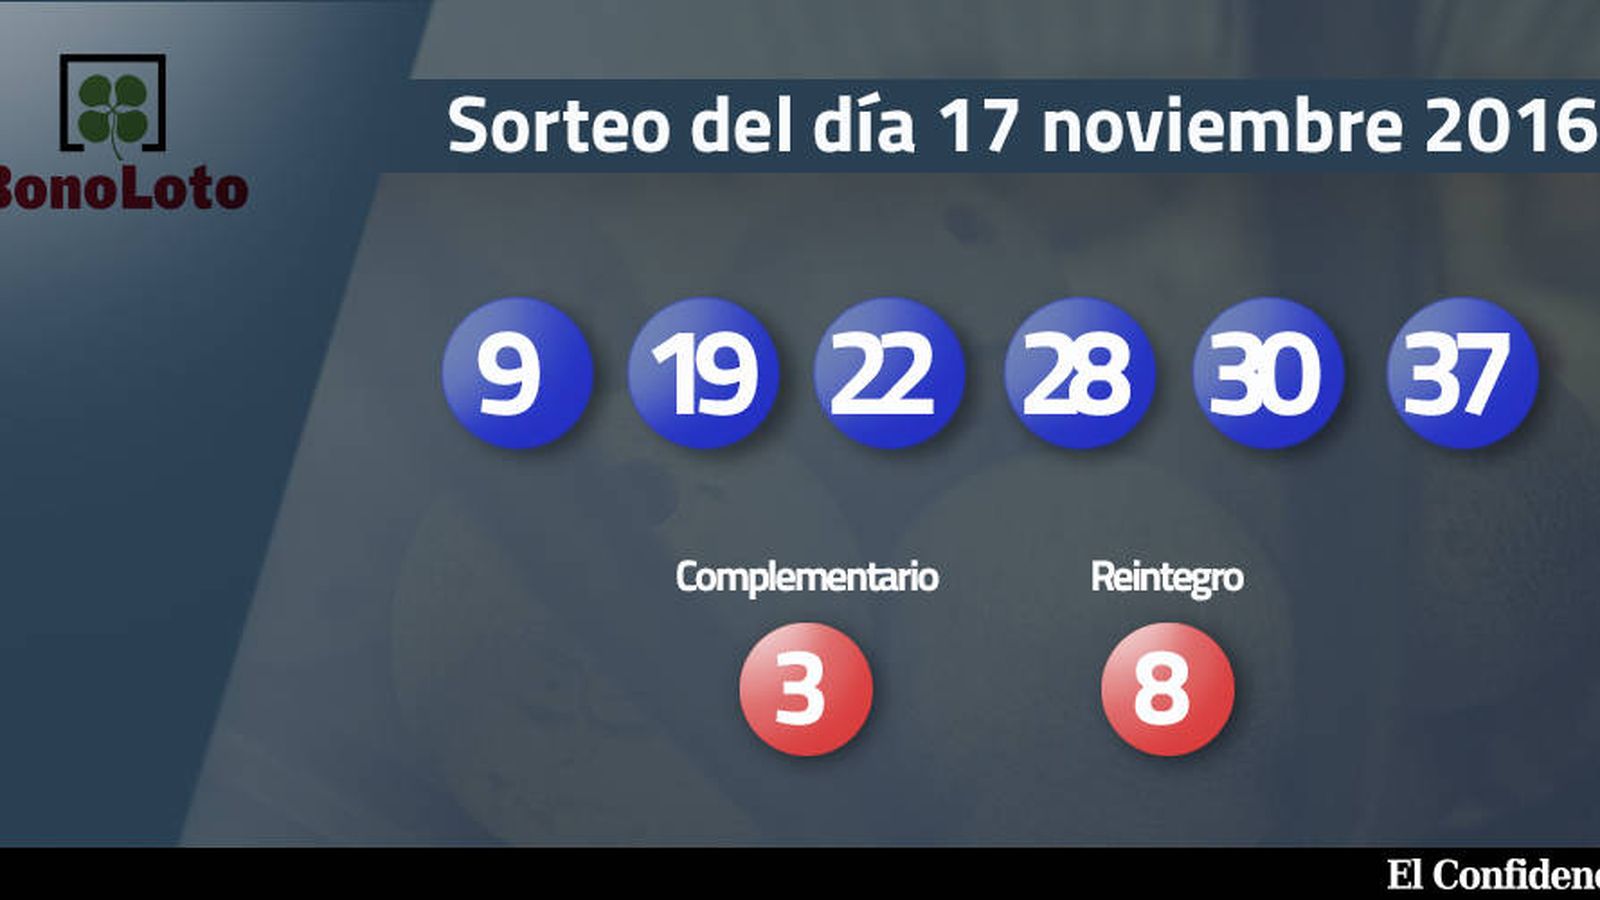 Foto: Resultados del sorteo de la Bonoloto del 17 noviembre 2016 (EC)